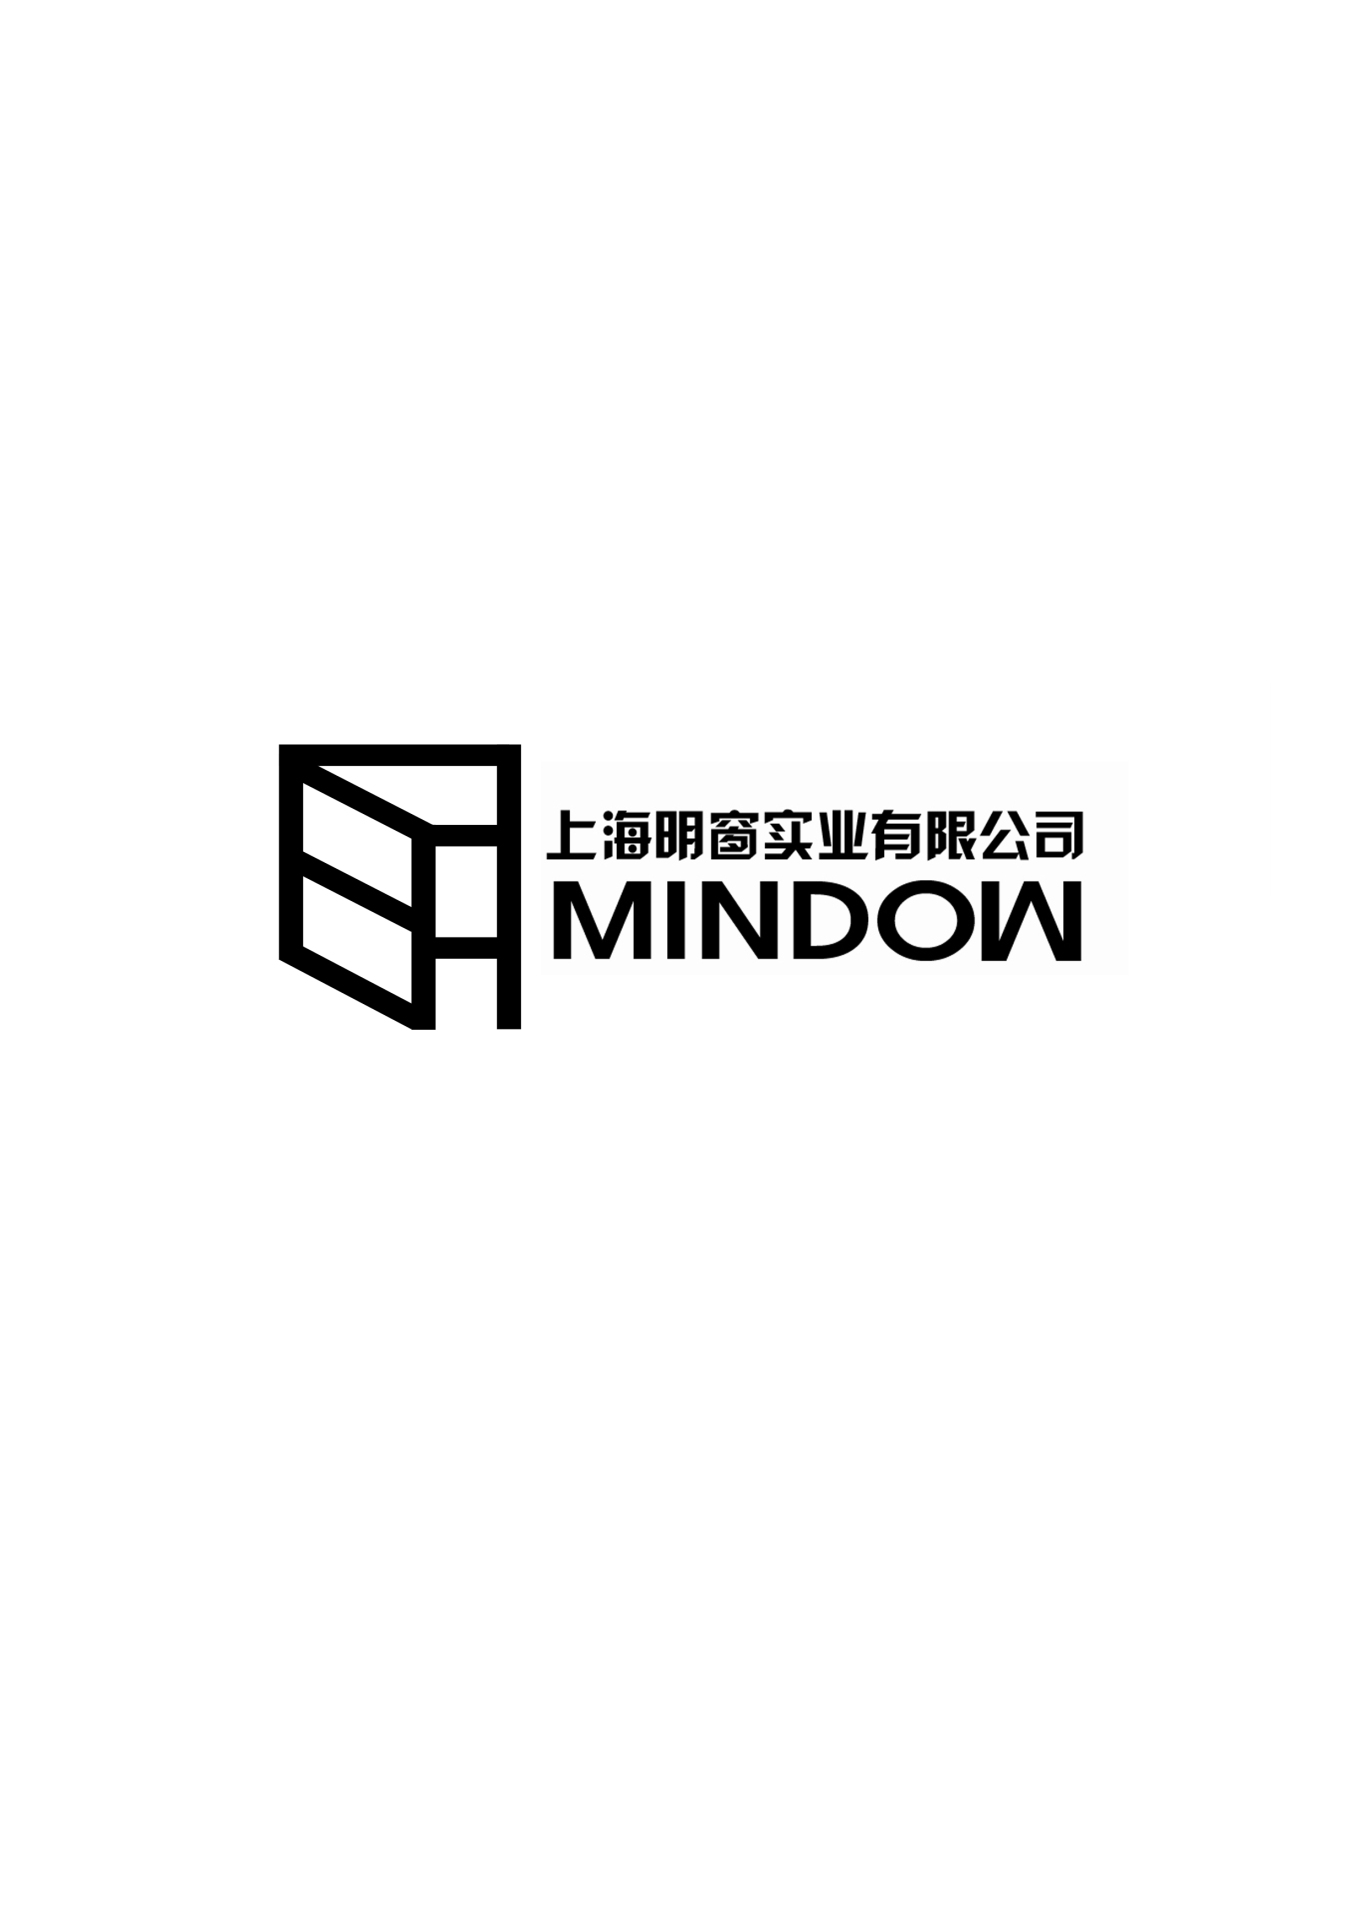 mindow图9